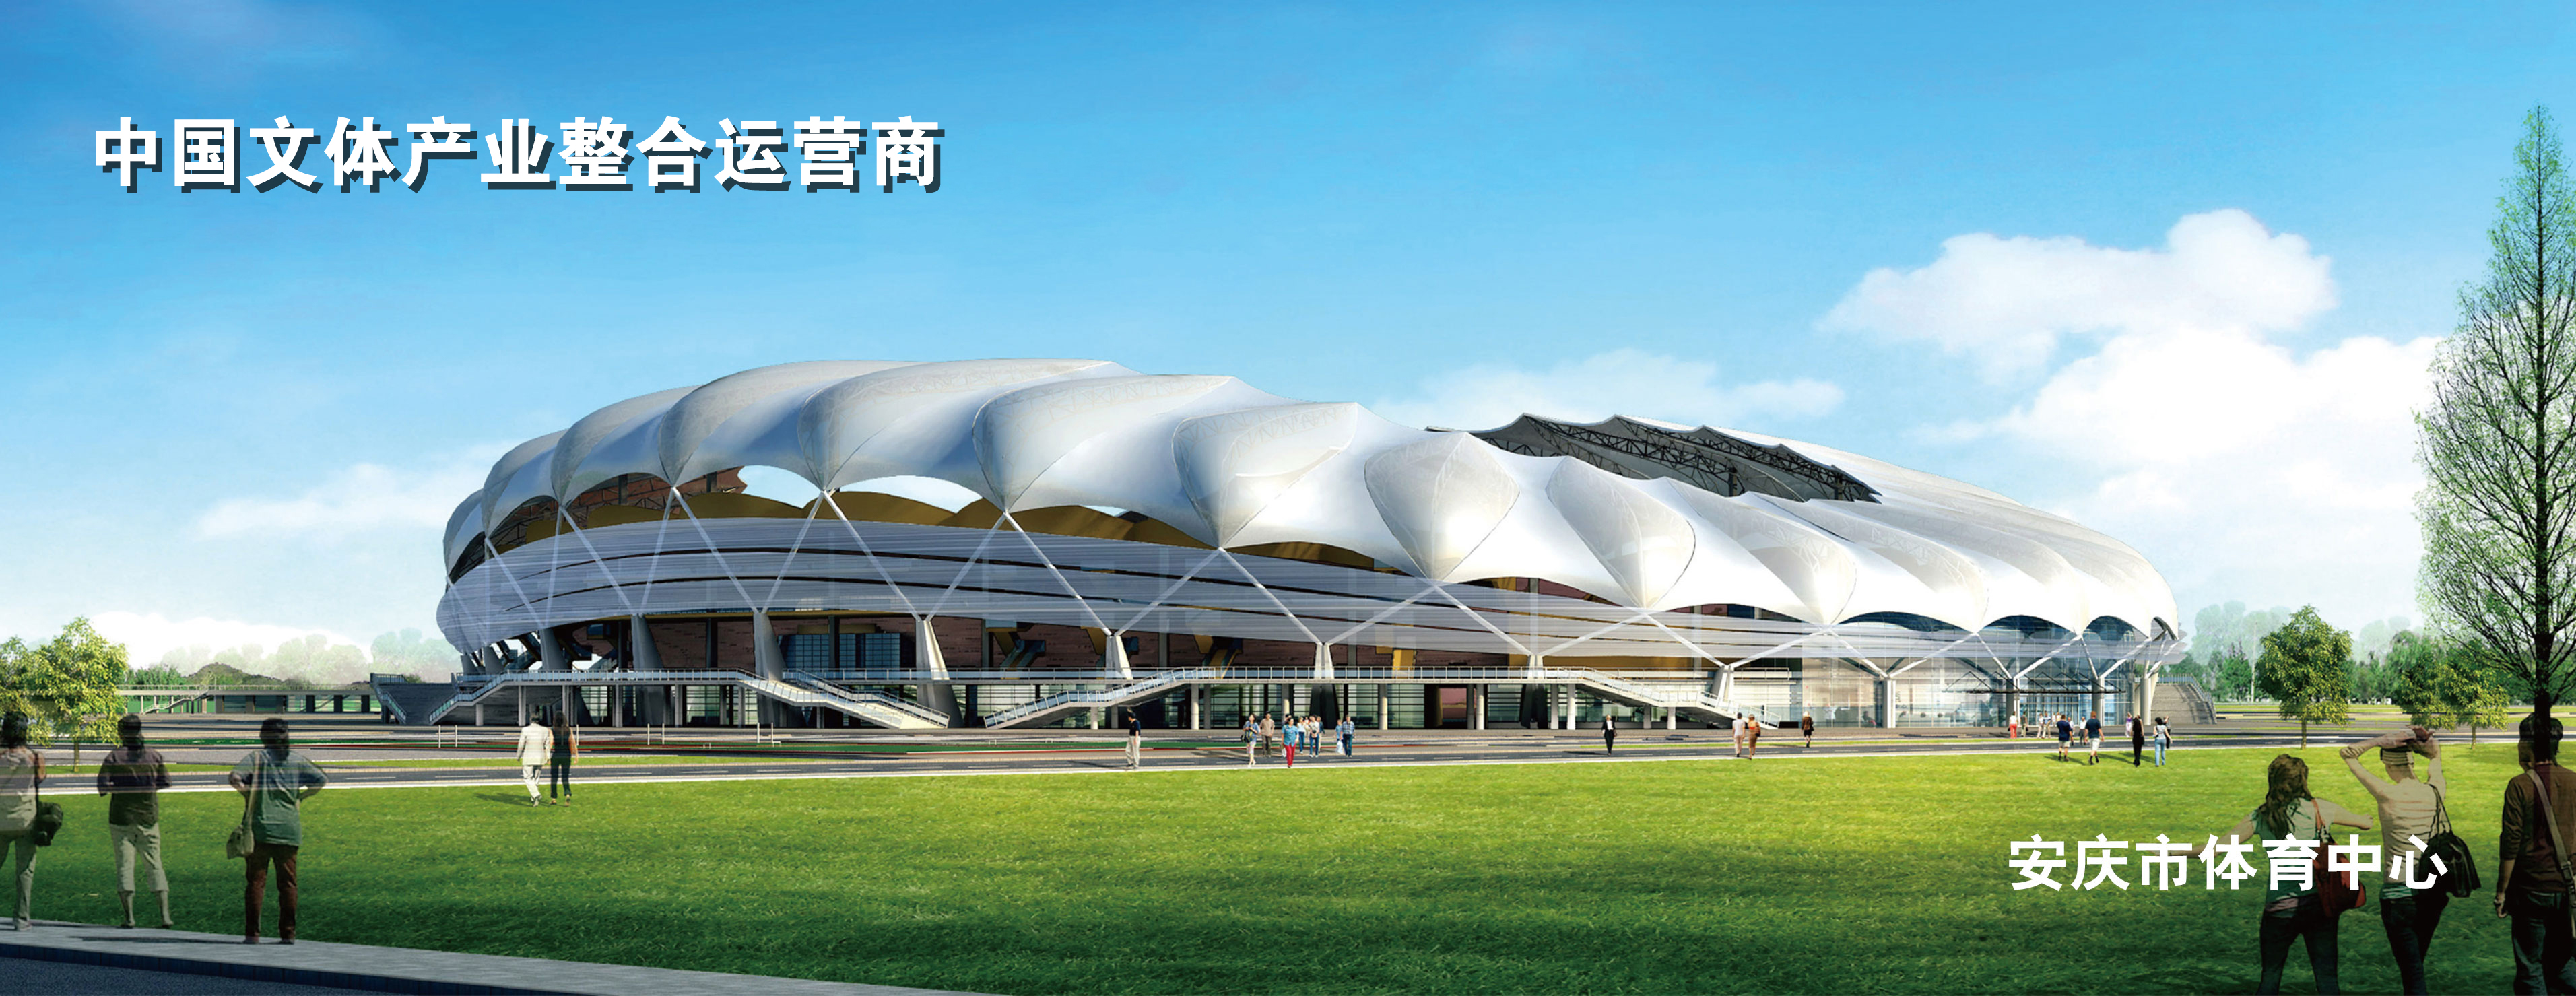 安慶市體育中心